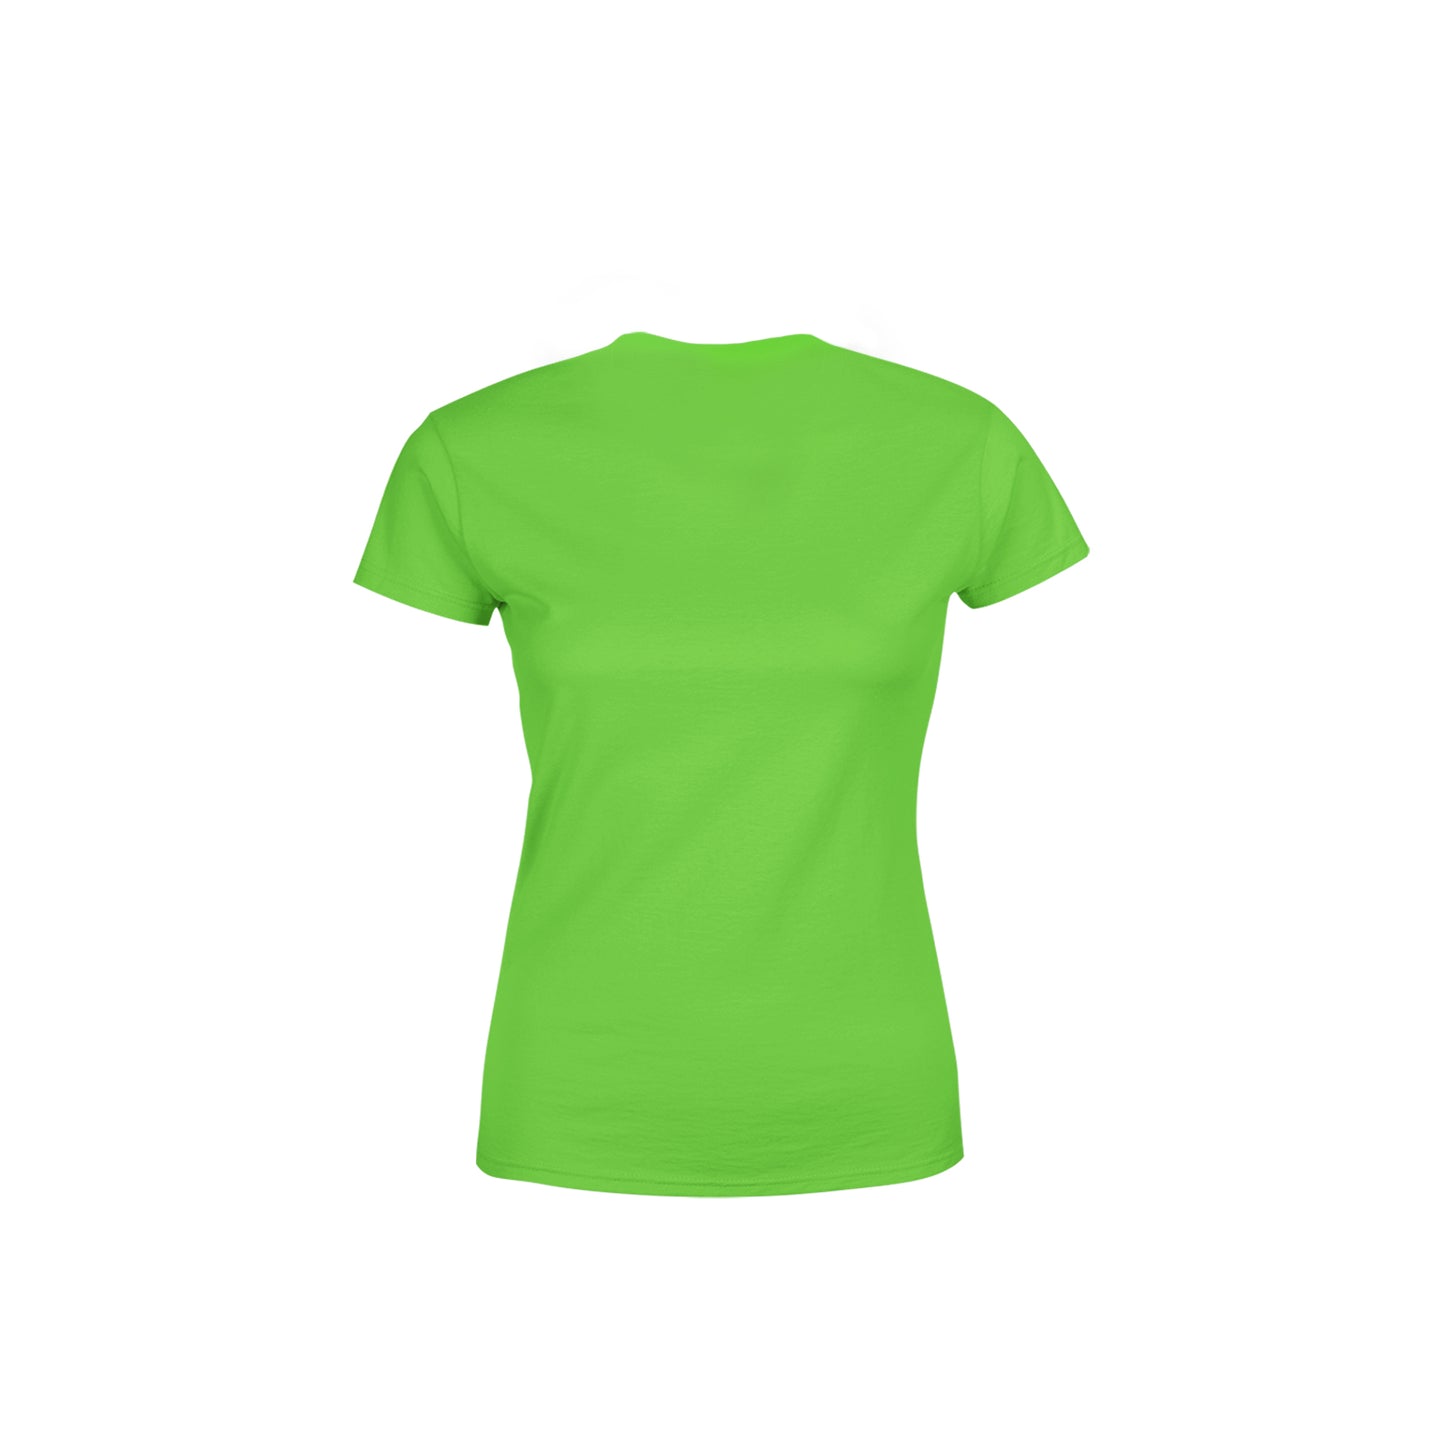 27 Number Women's T-Shirt (Liril Green)